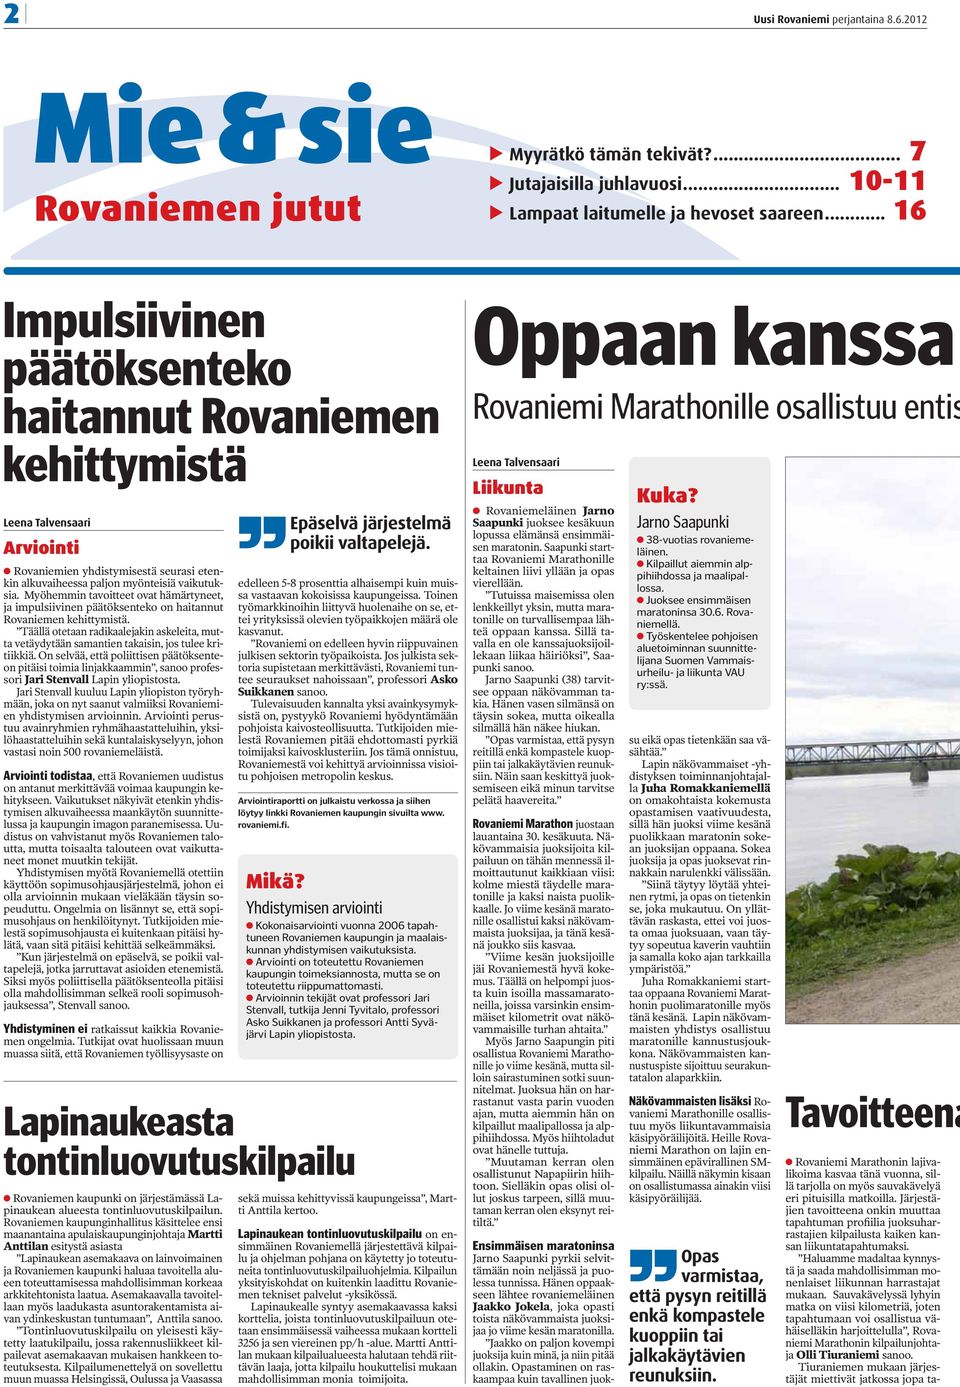 Myöhemmin tavoitteet ovat hämärtyneet, ja impulsiivinen päätöksenteko on haitannut Rovaniemen kehittymistä.